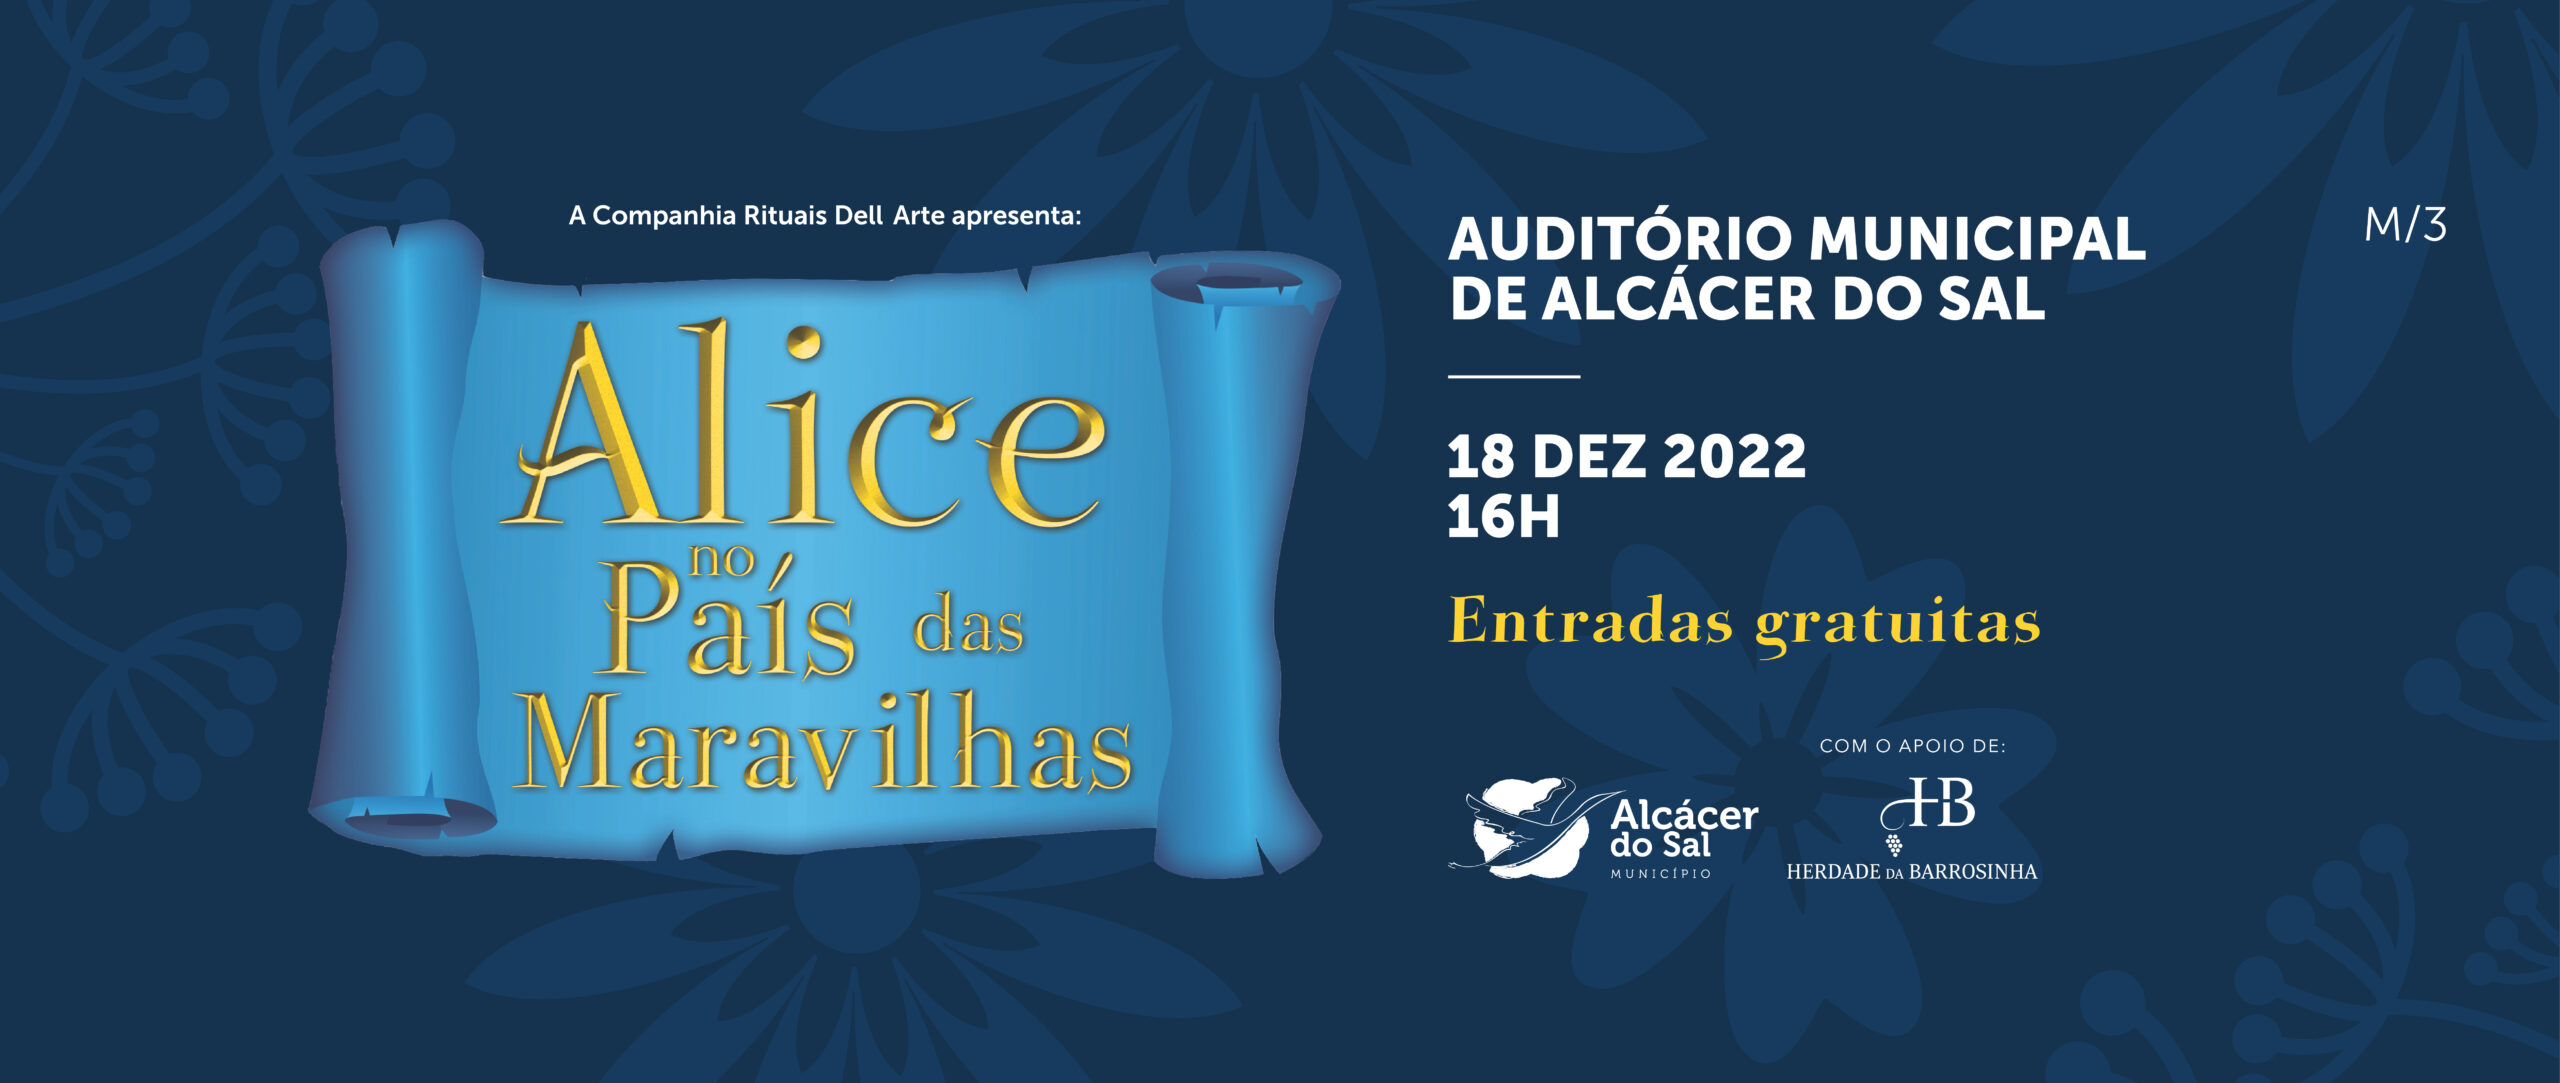 ‘Alice no País das Maravilhas’ no Auditório Municipal de Alcácer do Sal